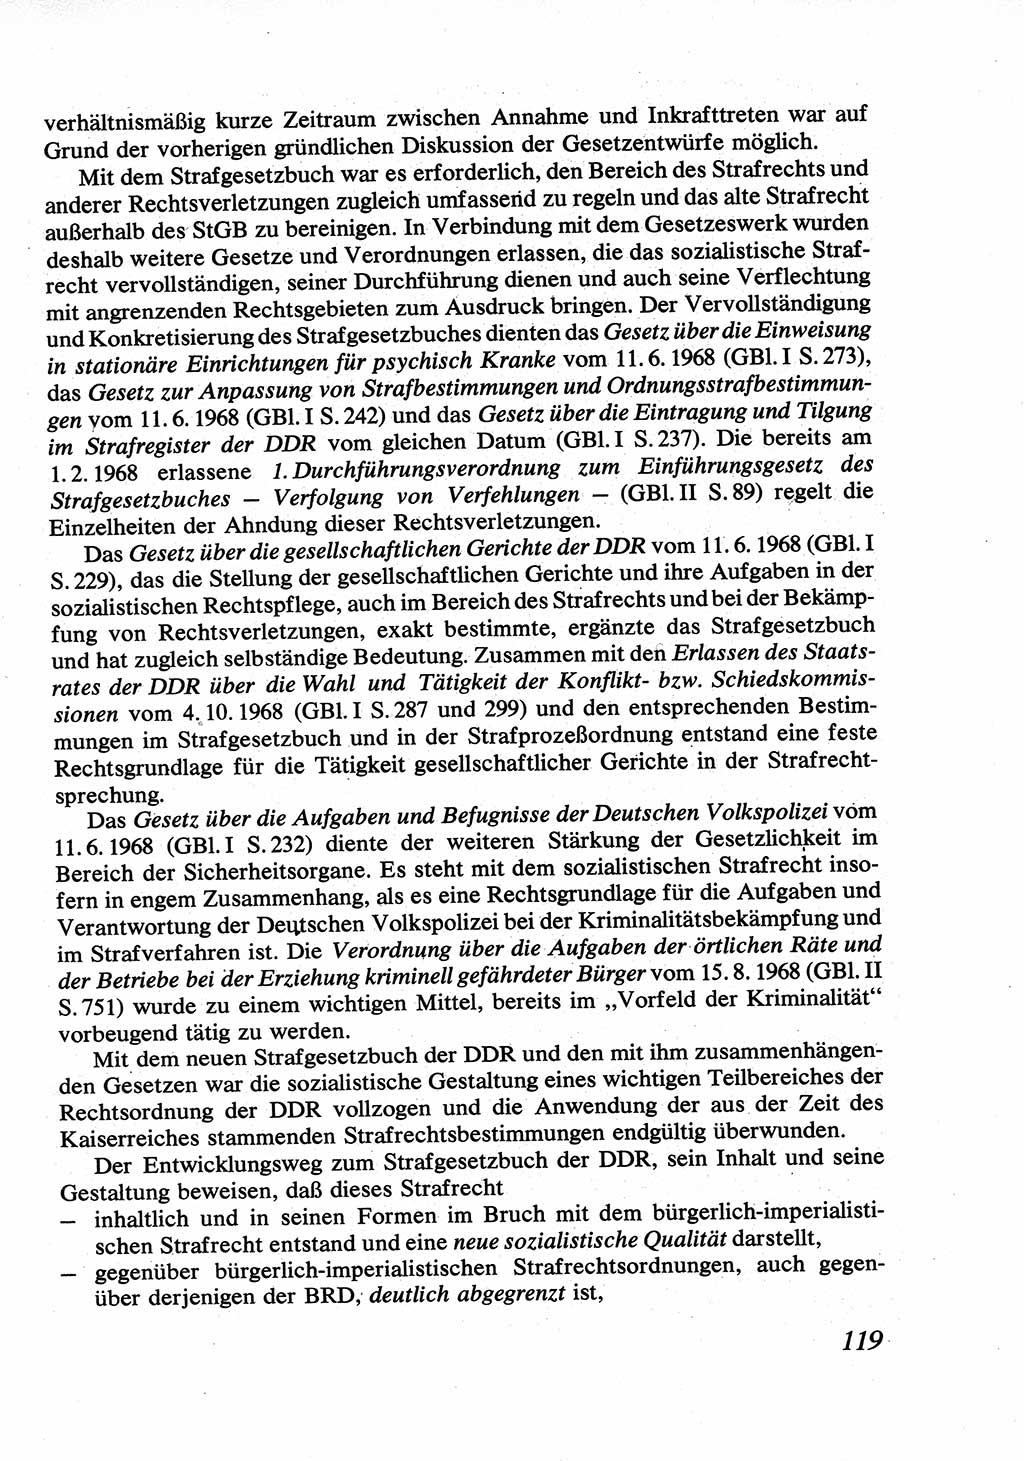 Strafrecht [Deutsche Demokratische Republik (DDR)], Allgemeiner Teil, Lehrbuch 1976, Seite 119 (Strafr. DDR AT Lb. 1976, S. 119)